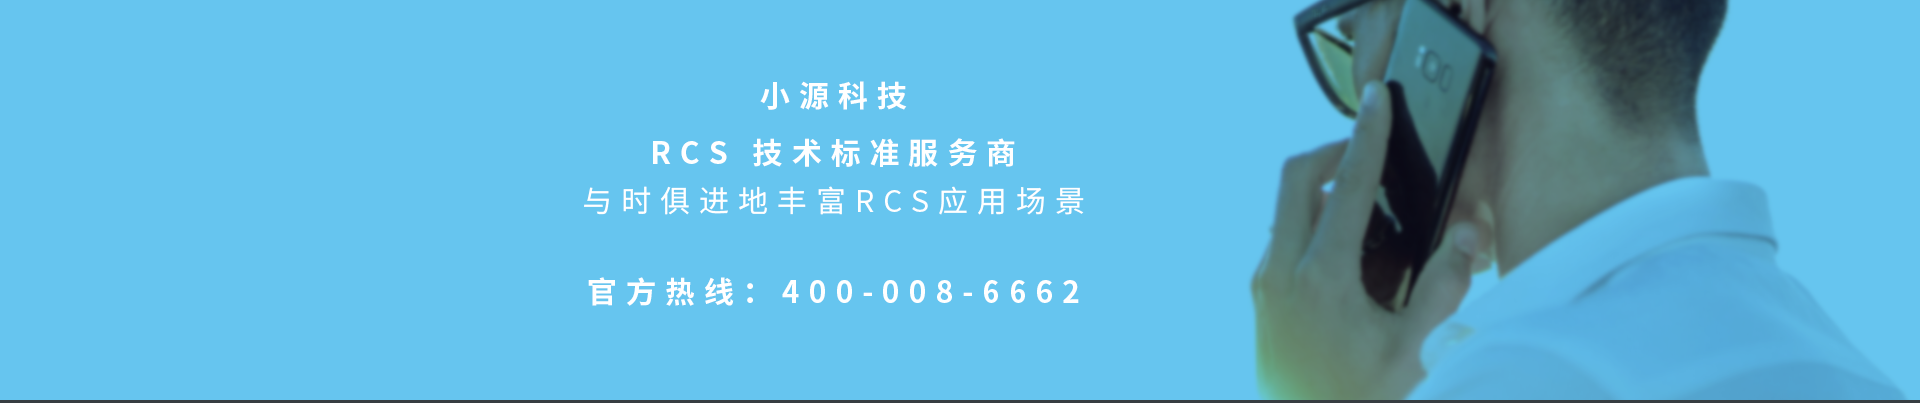 小源科技Rcs服務商官方熱線